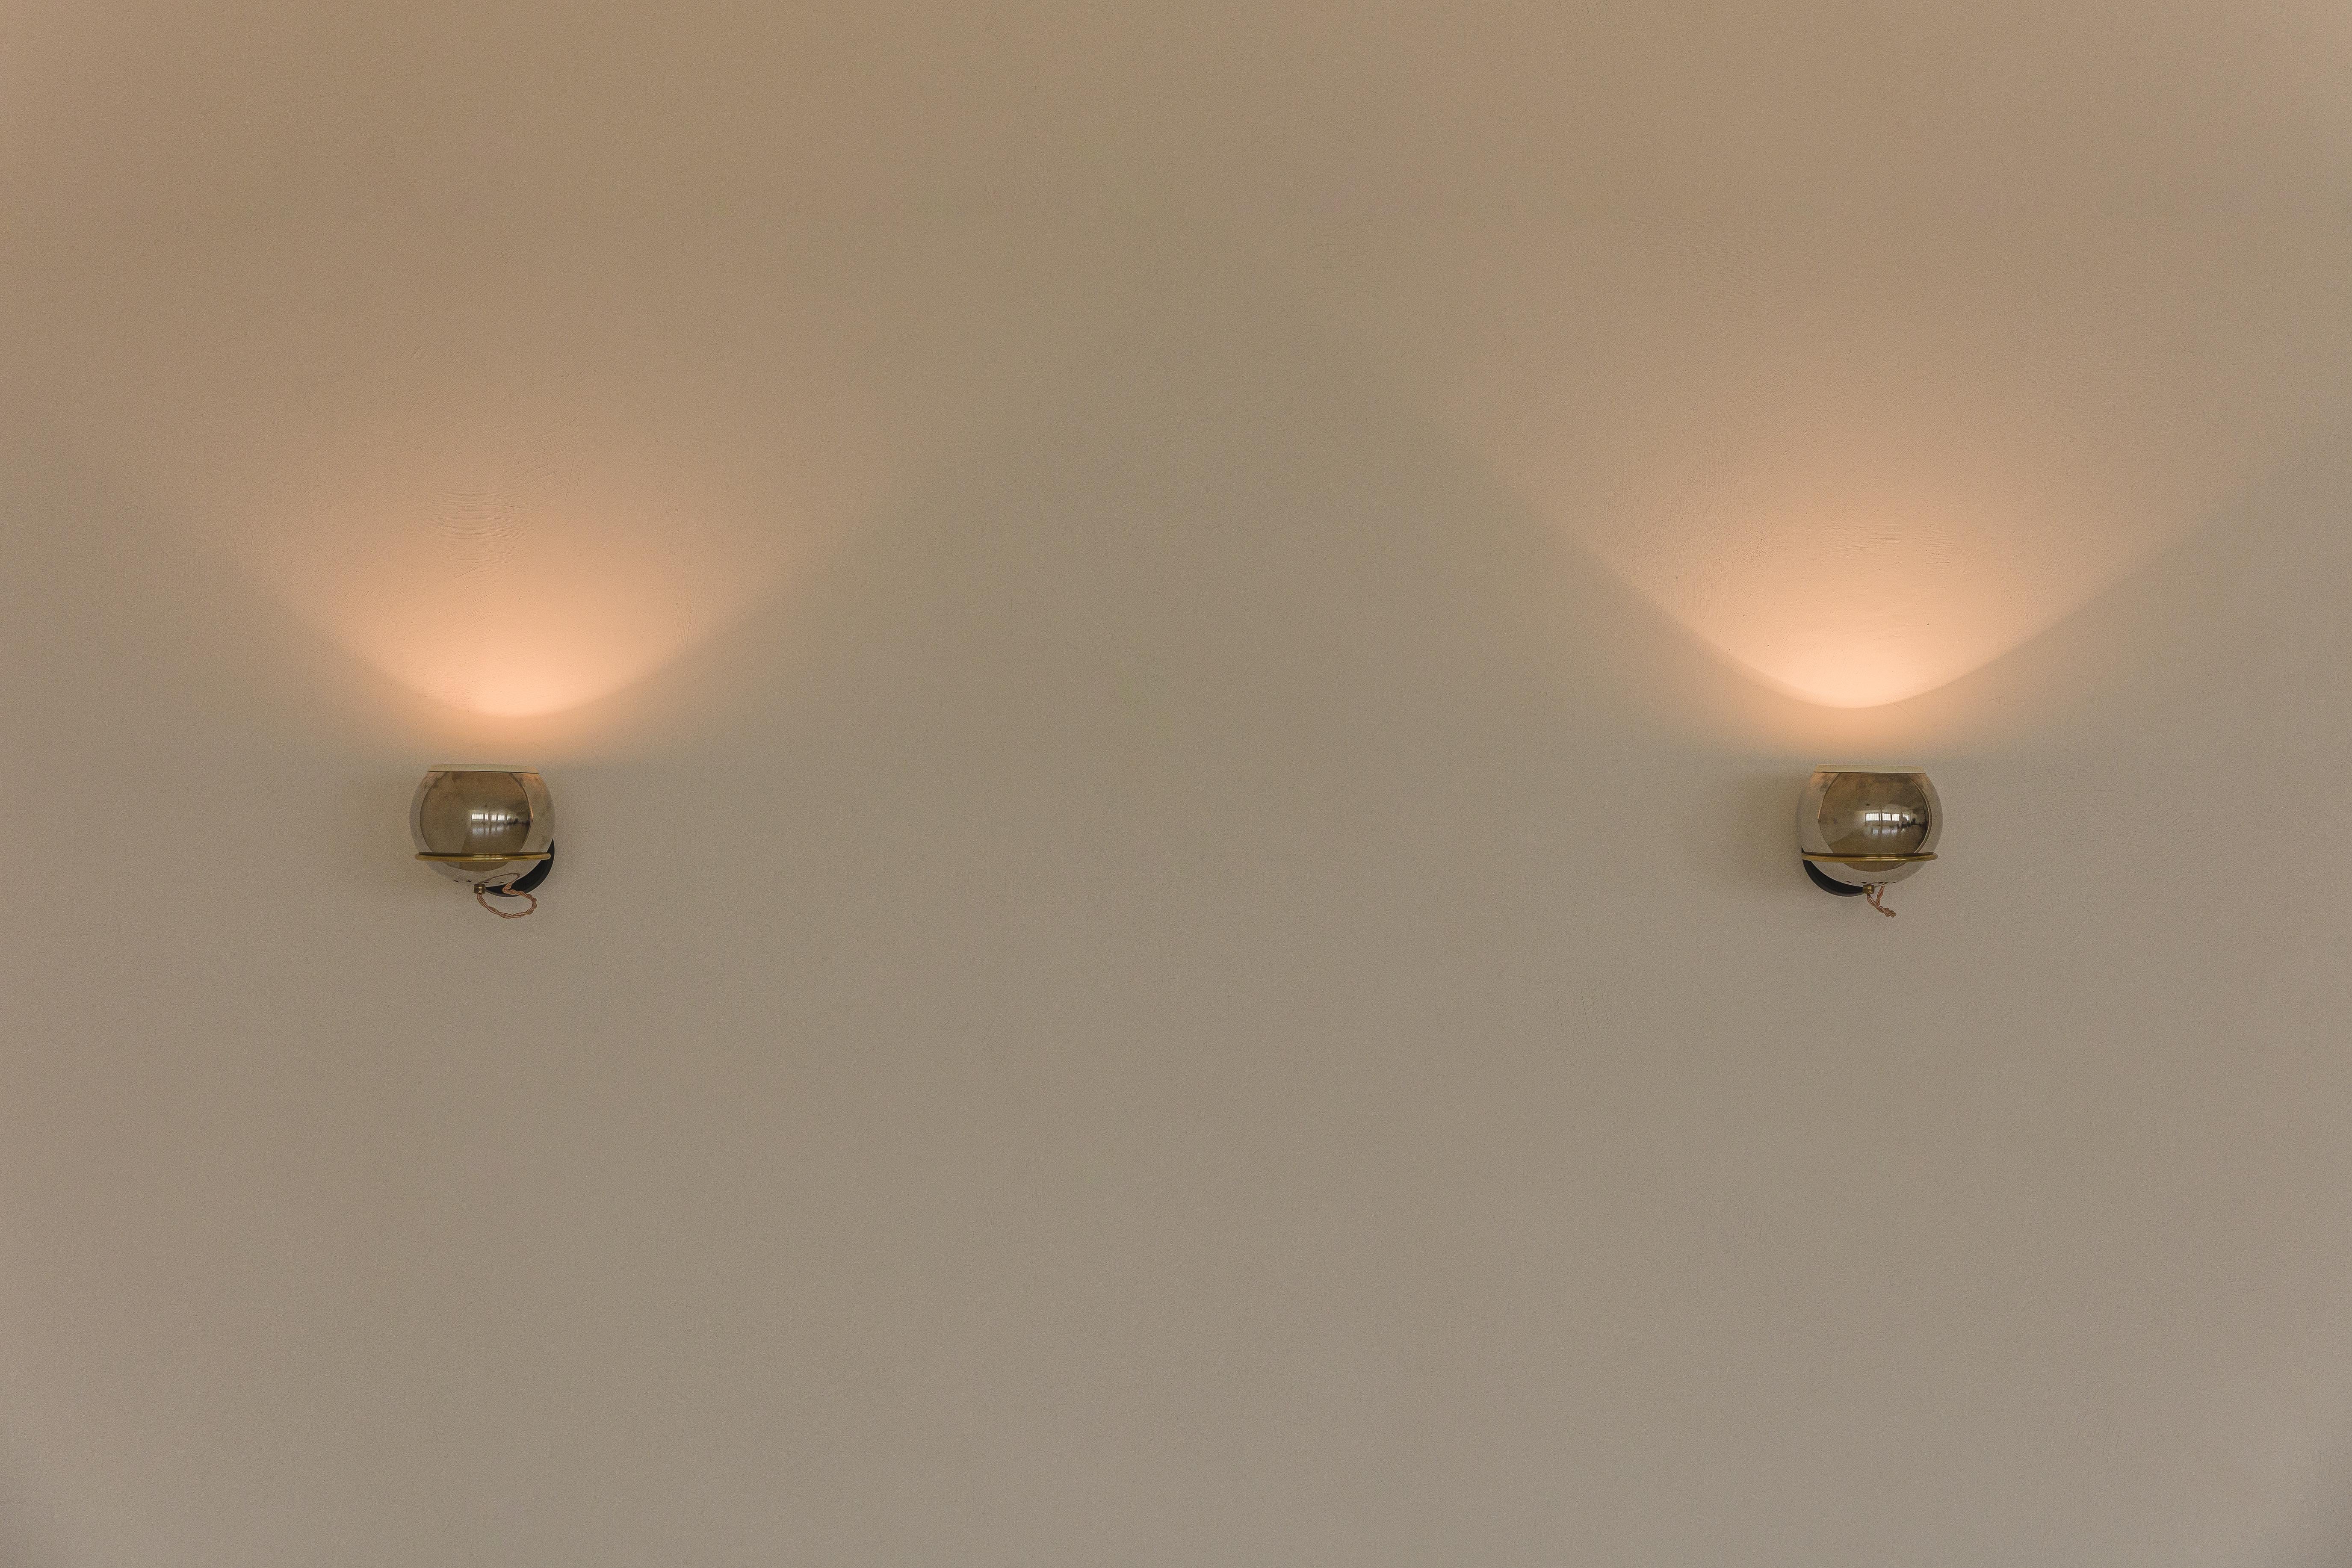 Zuvor restauriert.
Diese Wandlampen haben flexible Strukturen, um die Lichtpositionen einzustellen.